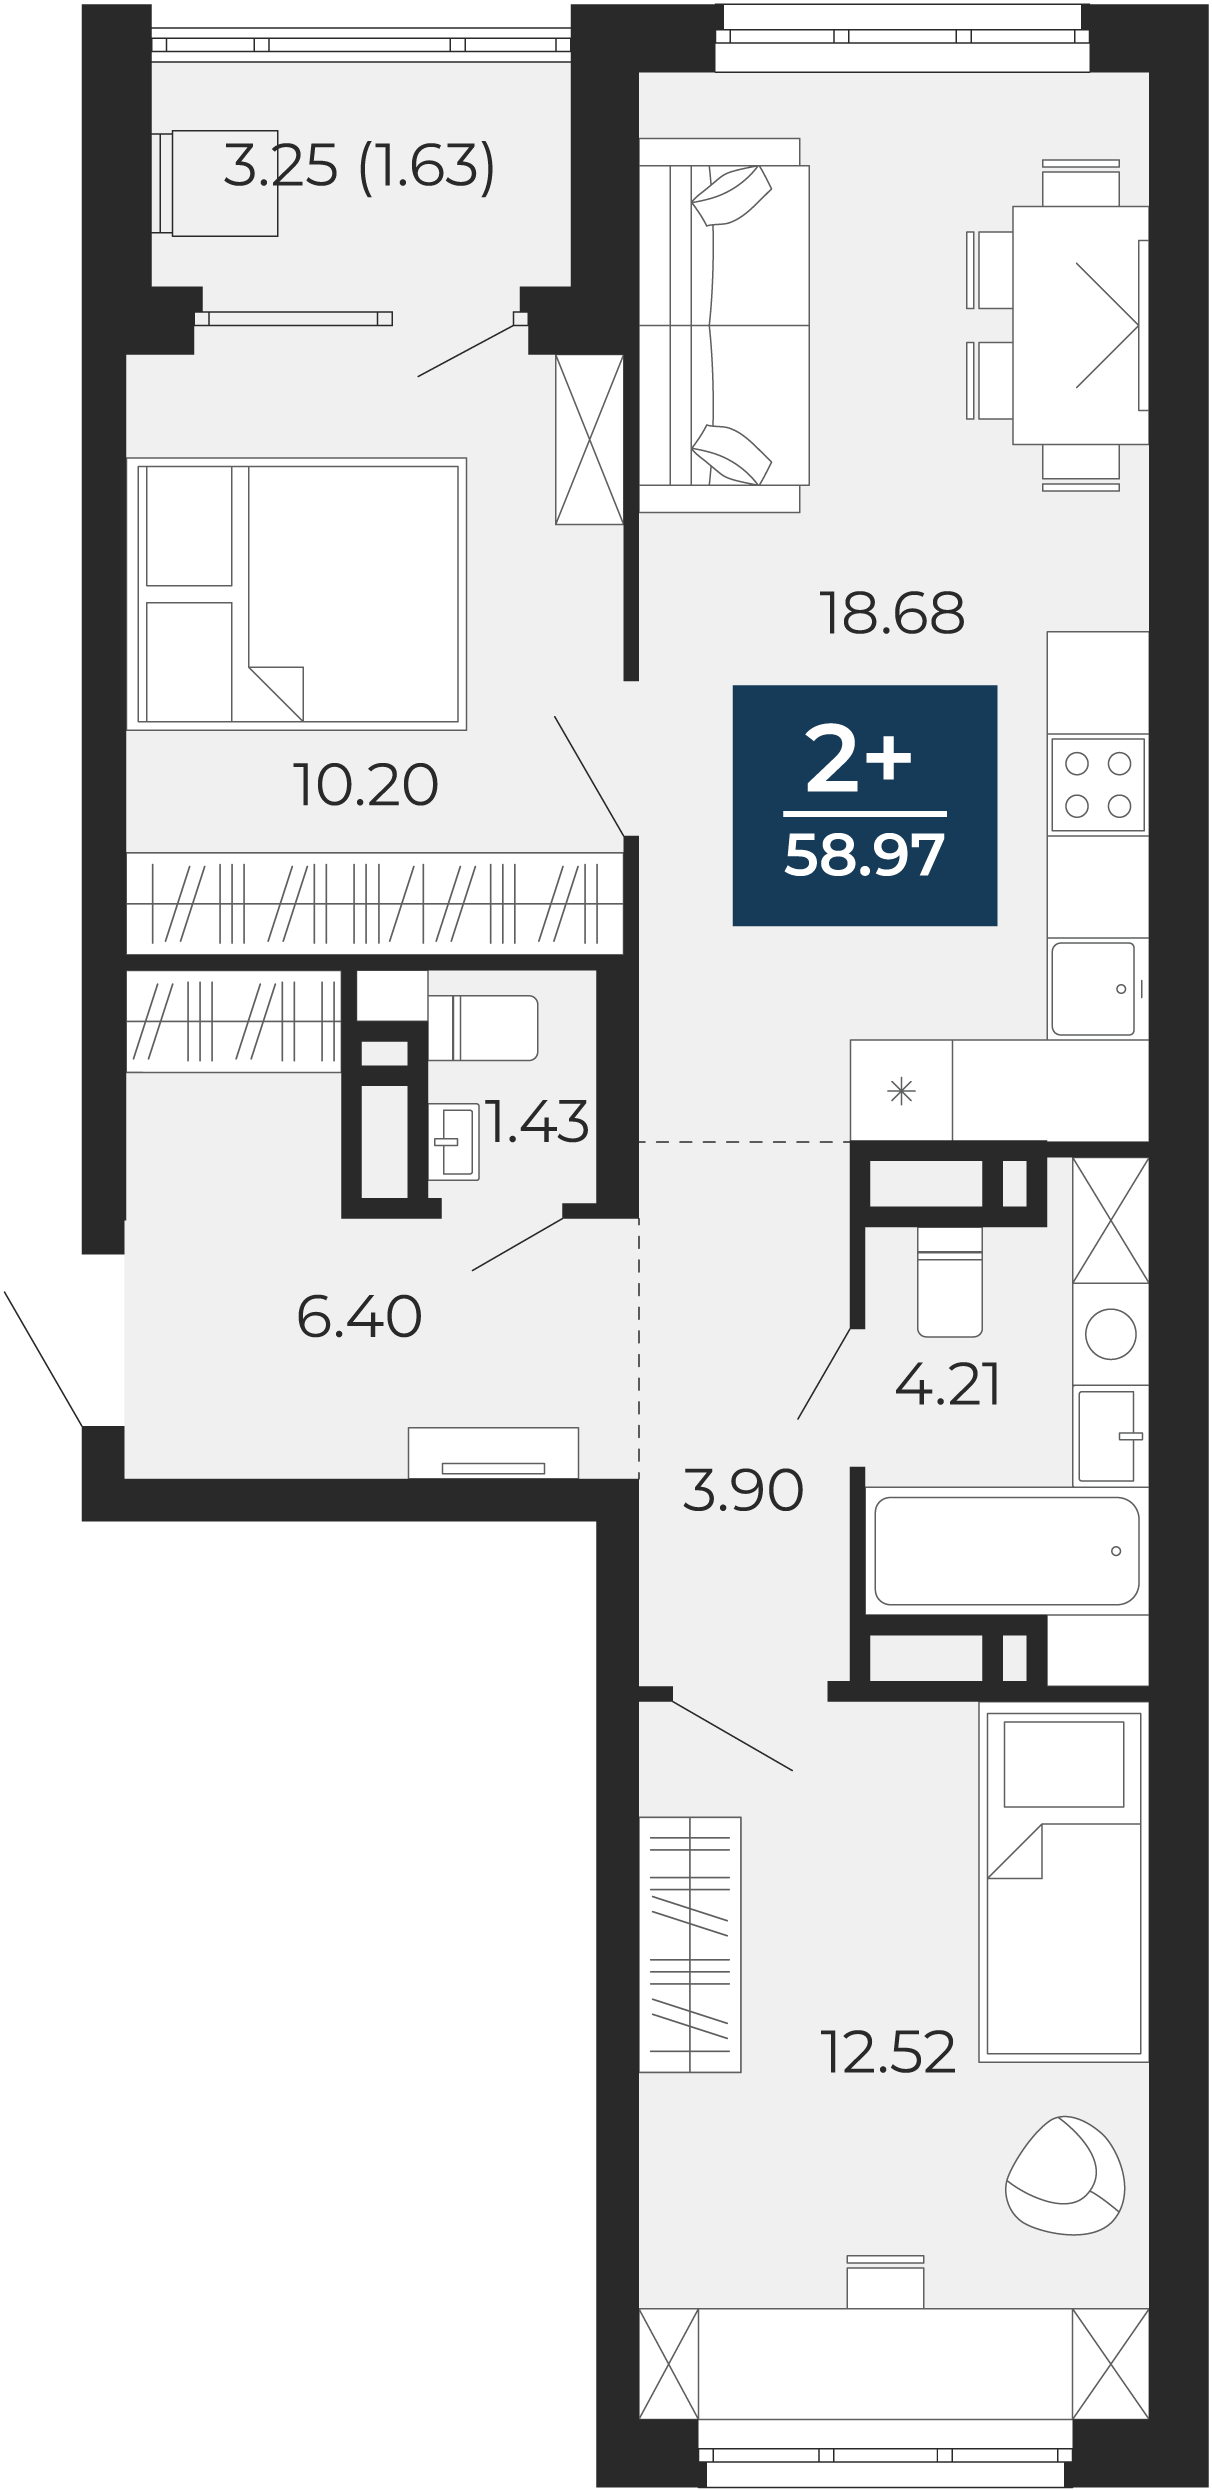 Квартира № 146, 2-комнатная, 58.97 кв. м, 16 этаж